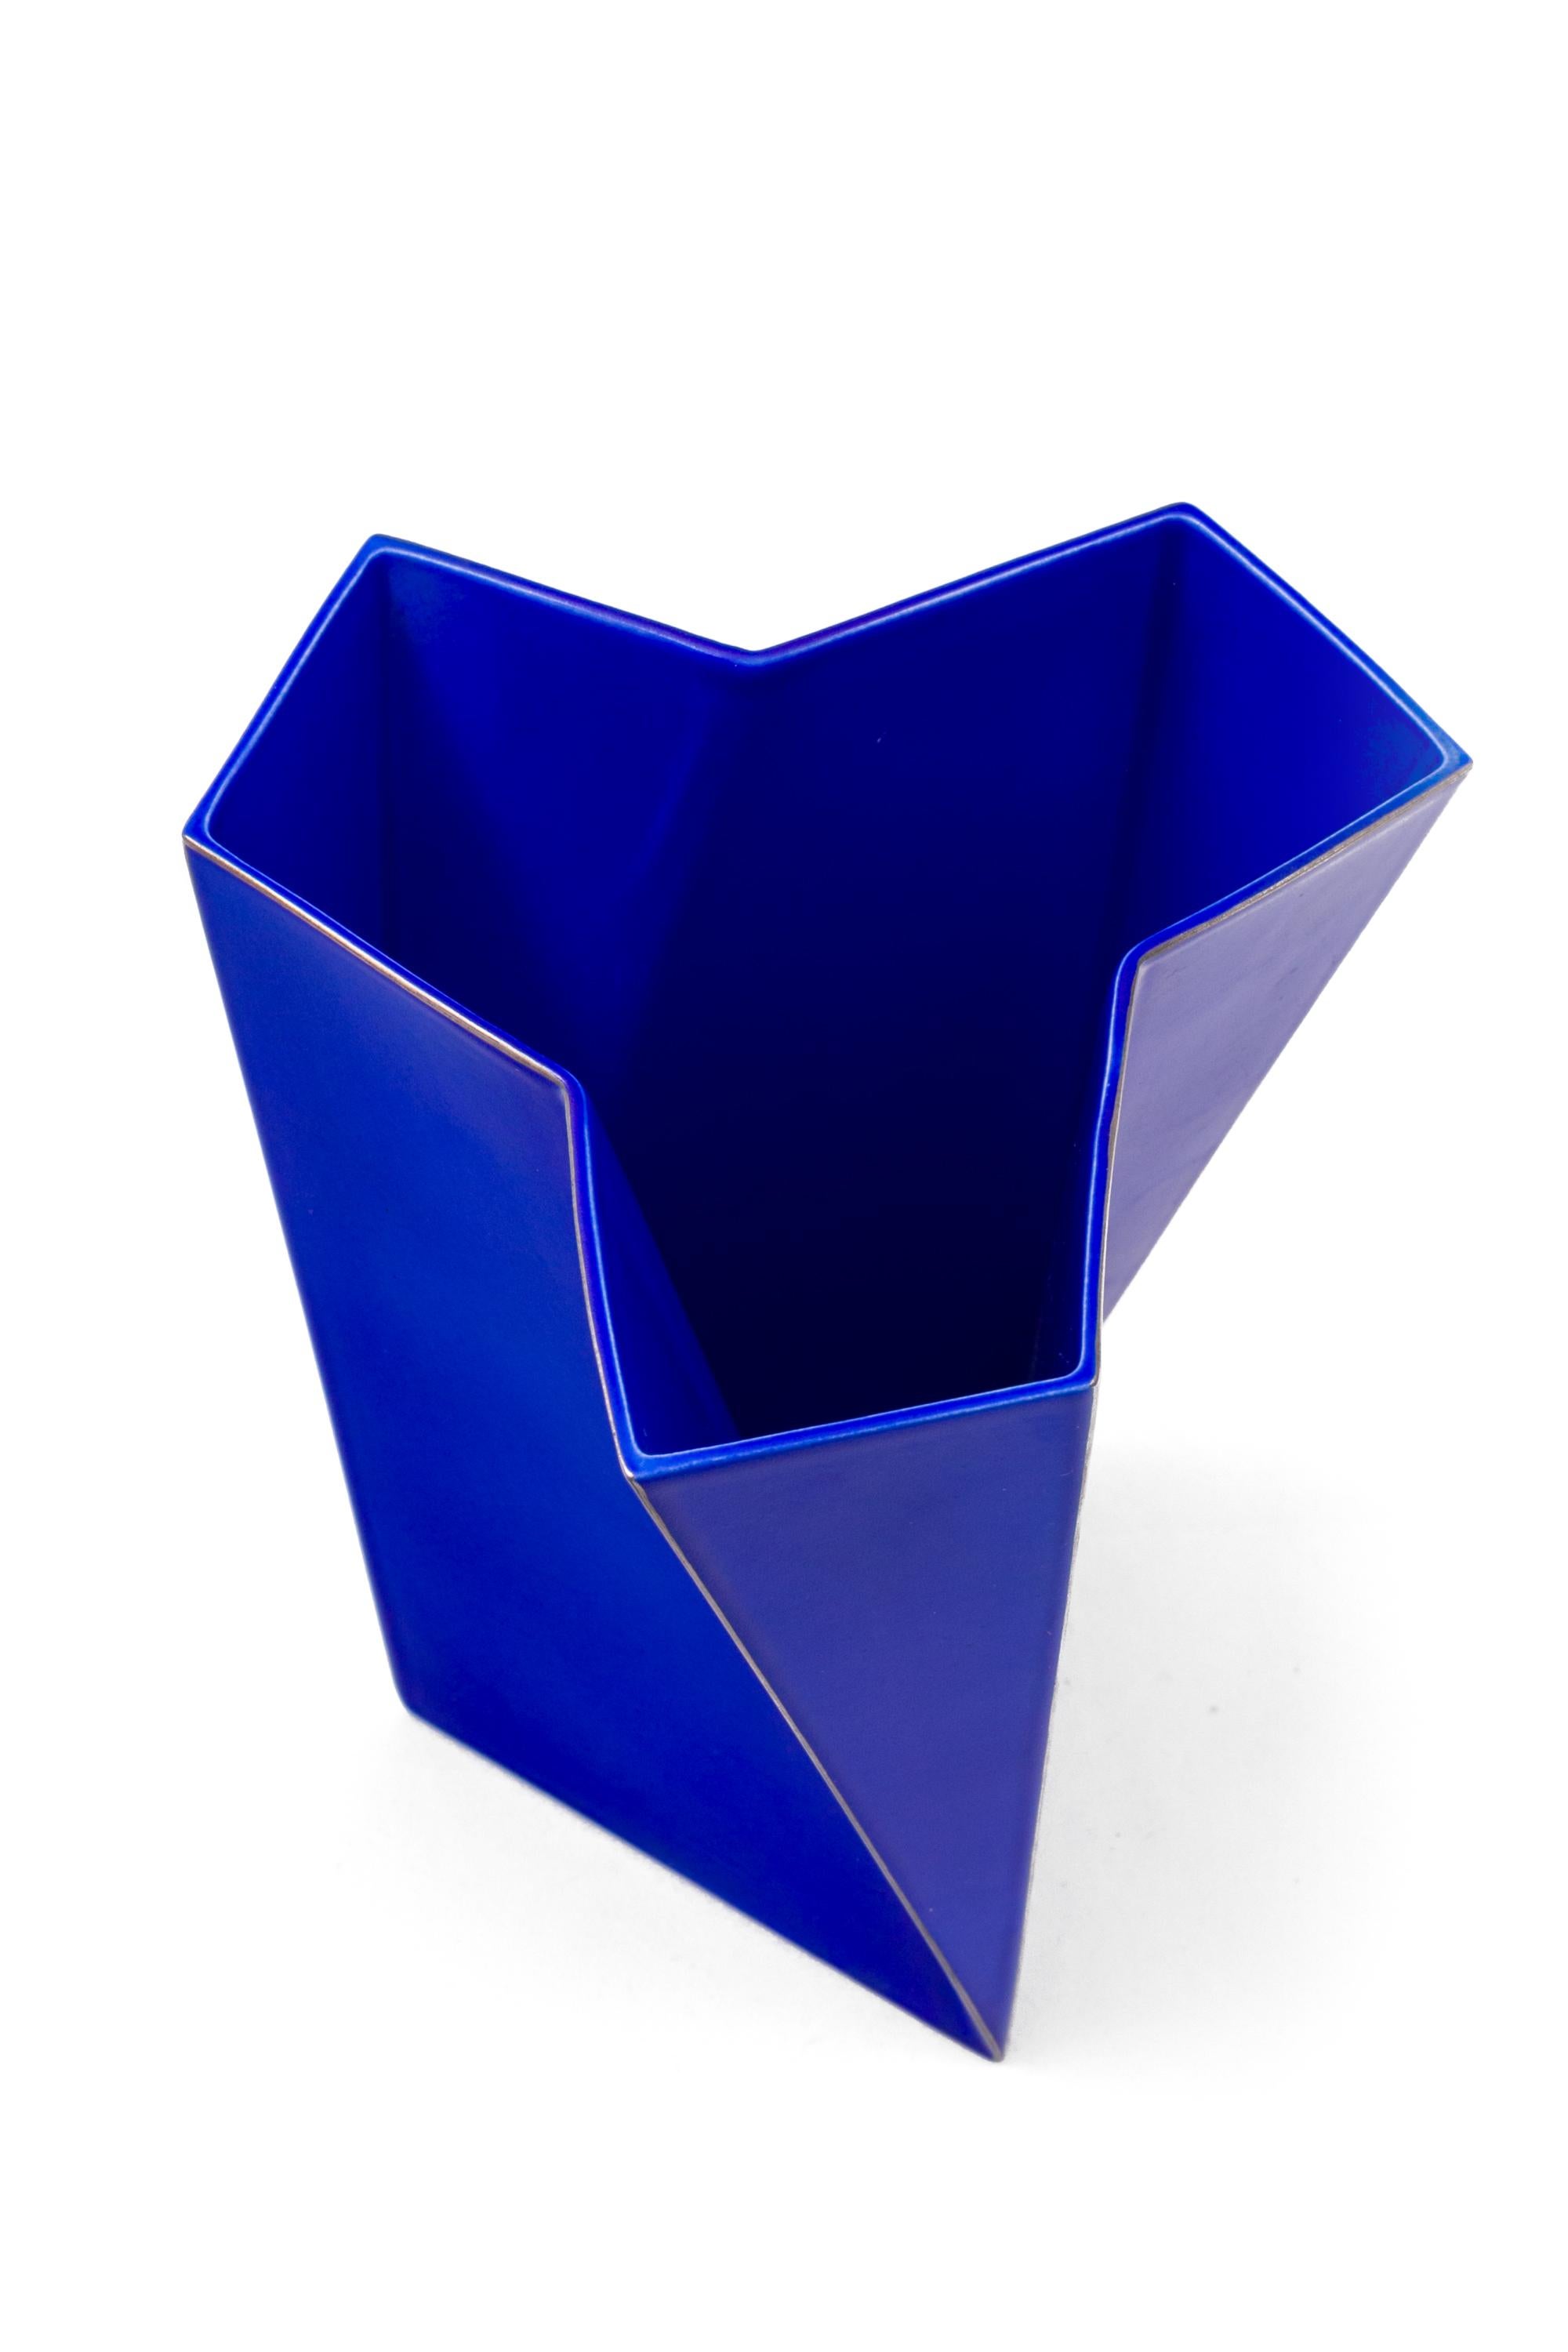 Danish Bing & Grondahl Geometric Blue Porcelain Futura Vase by Else Kamp, Denmark 1980s